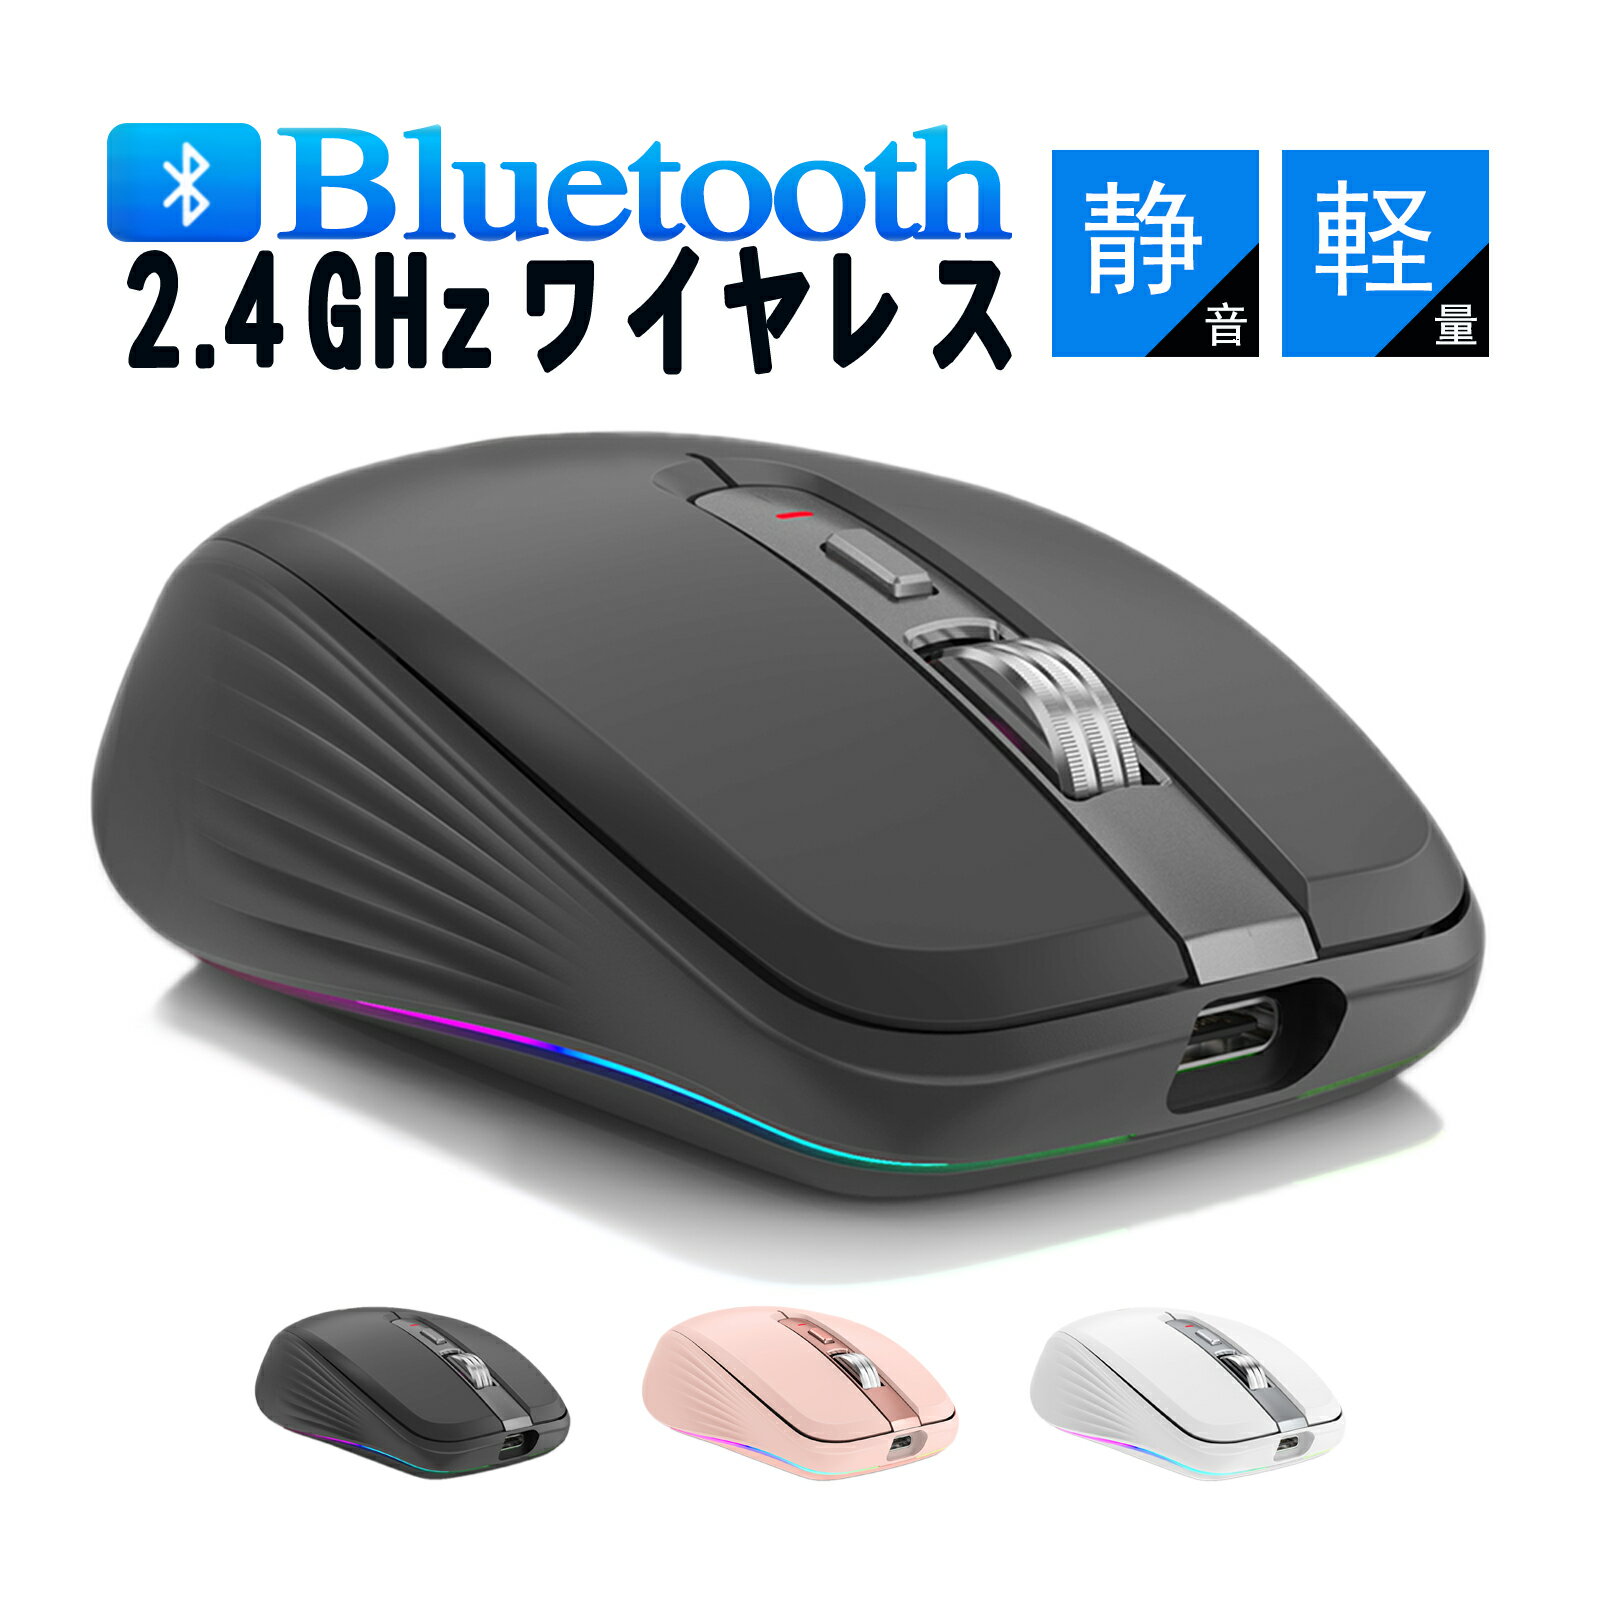 マウス Bluetooth 5.1 ワイヤレスマウス 無線マウス 充電式 2.4GHz光学式 7ボタン 人間工学デザイン 4DPIモード 最大2400DPI 7色ライト付き 省エネルギー 高精度 小型 持ち運び便利 日本語取扱説明書付き